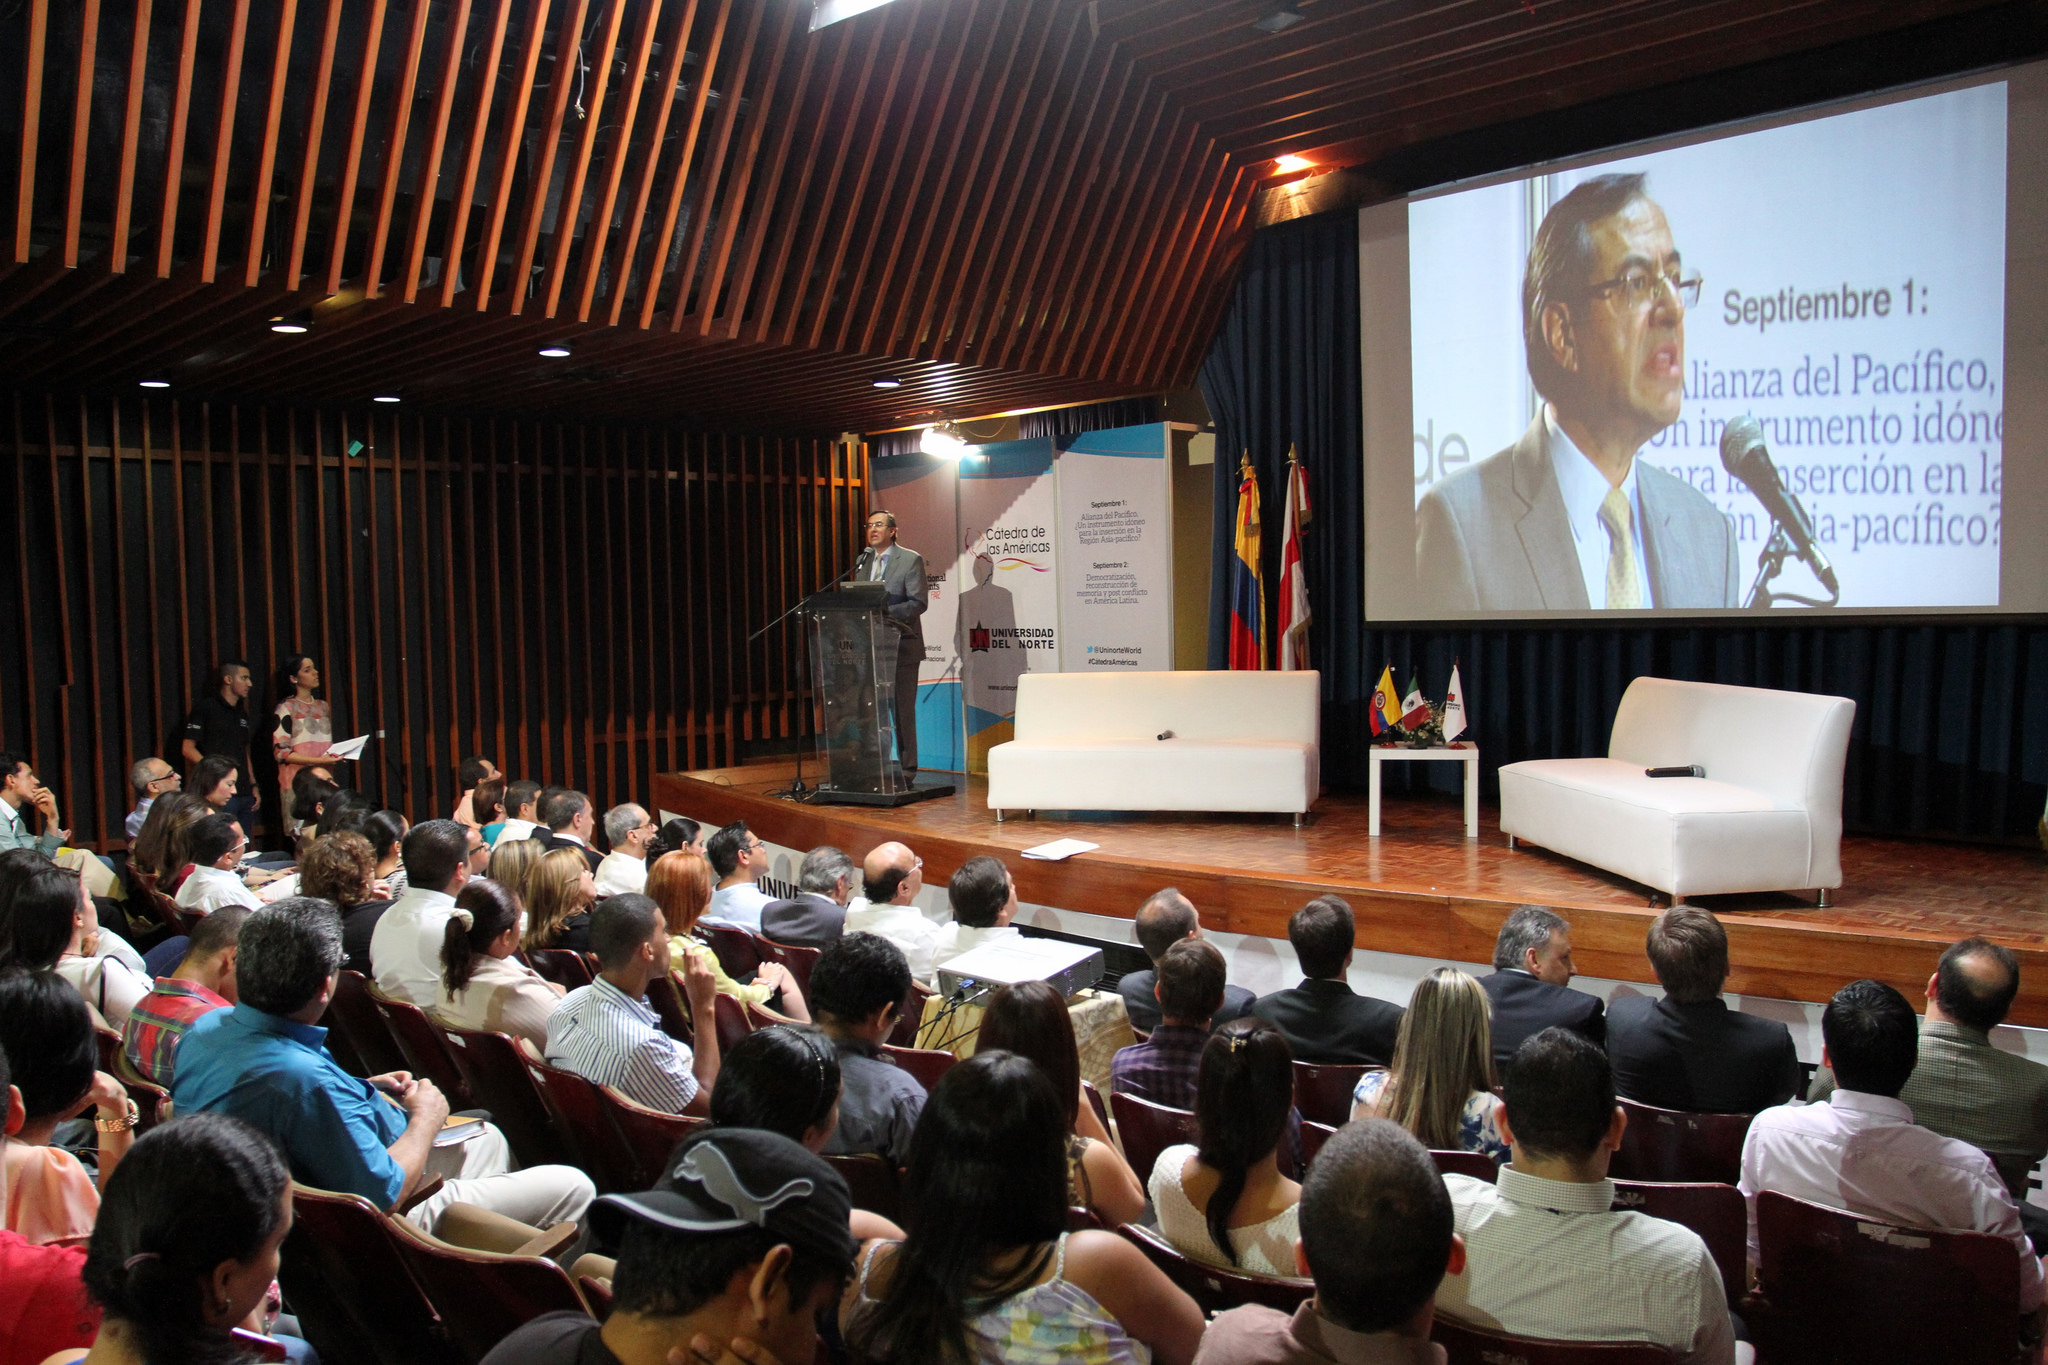 Viceministro de Asuntos Multilaterales presentó los logros de la Alianza del Pacífico en la Universidad del Norte en Barranquilla